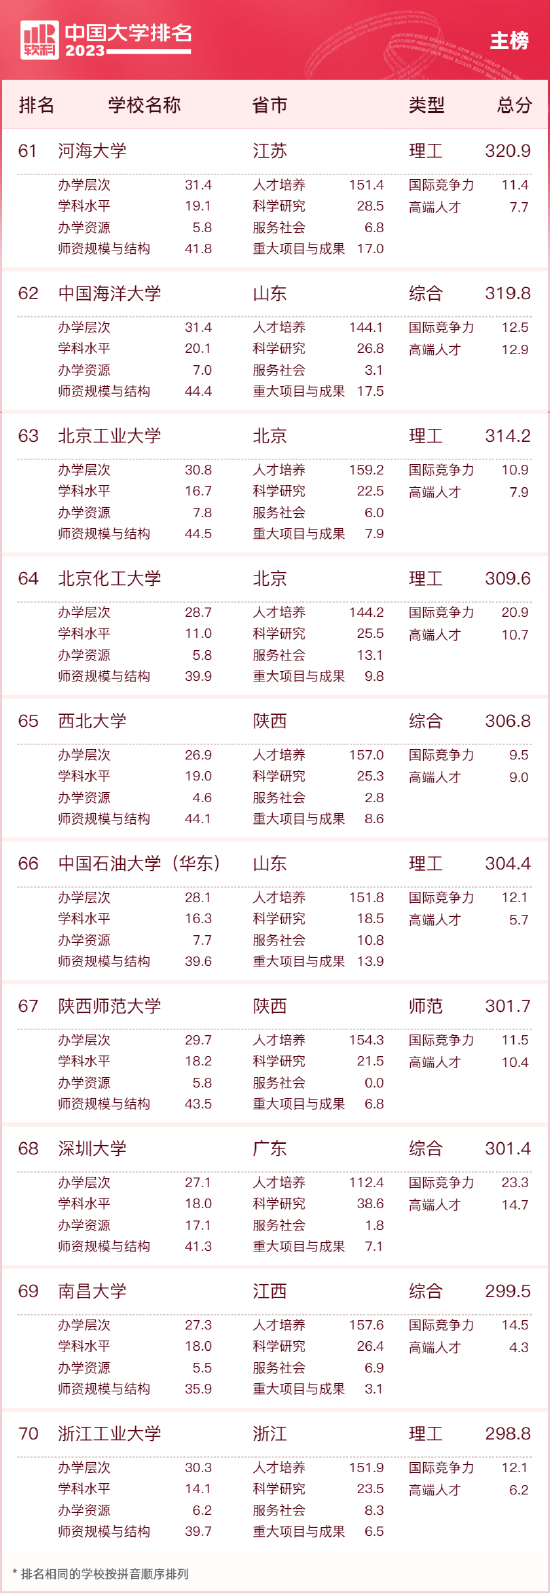 2023中国大学排名公布 清华北大浙大连续9年蝉联三甲 第7张